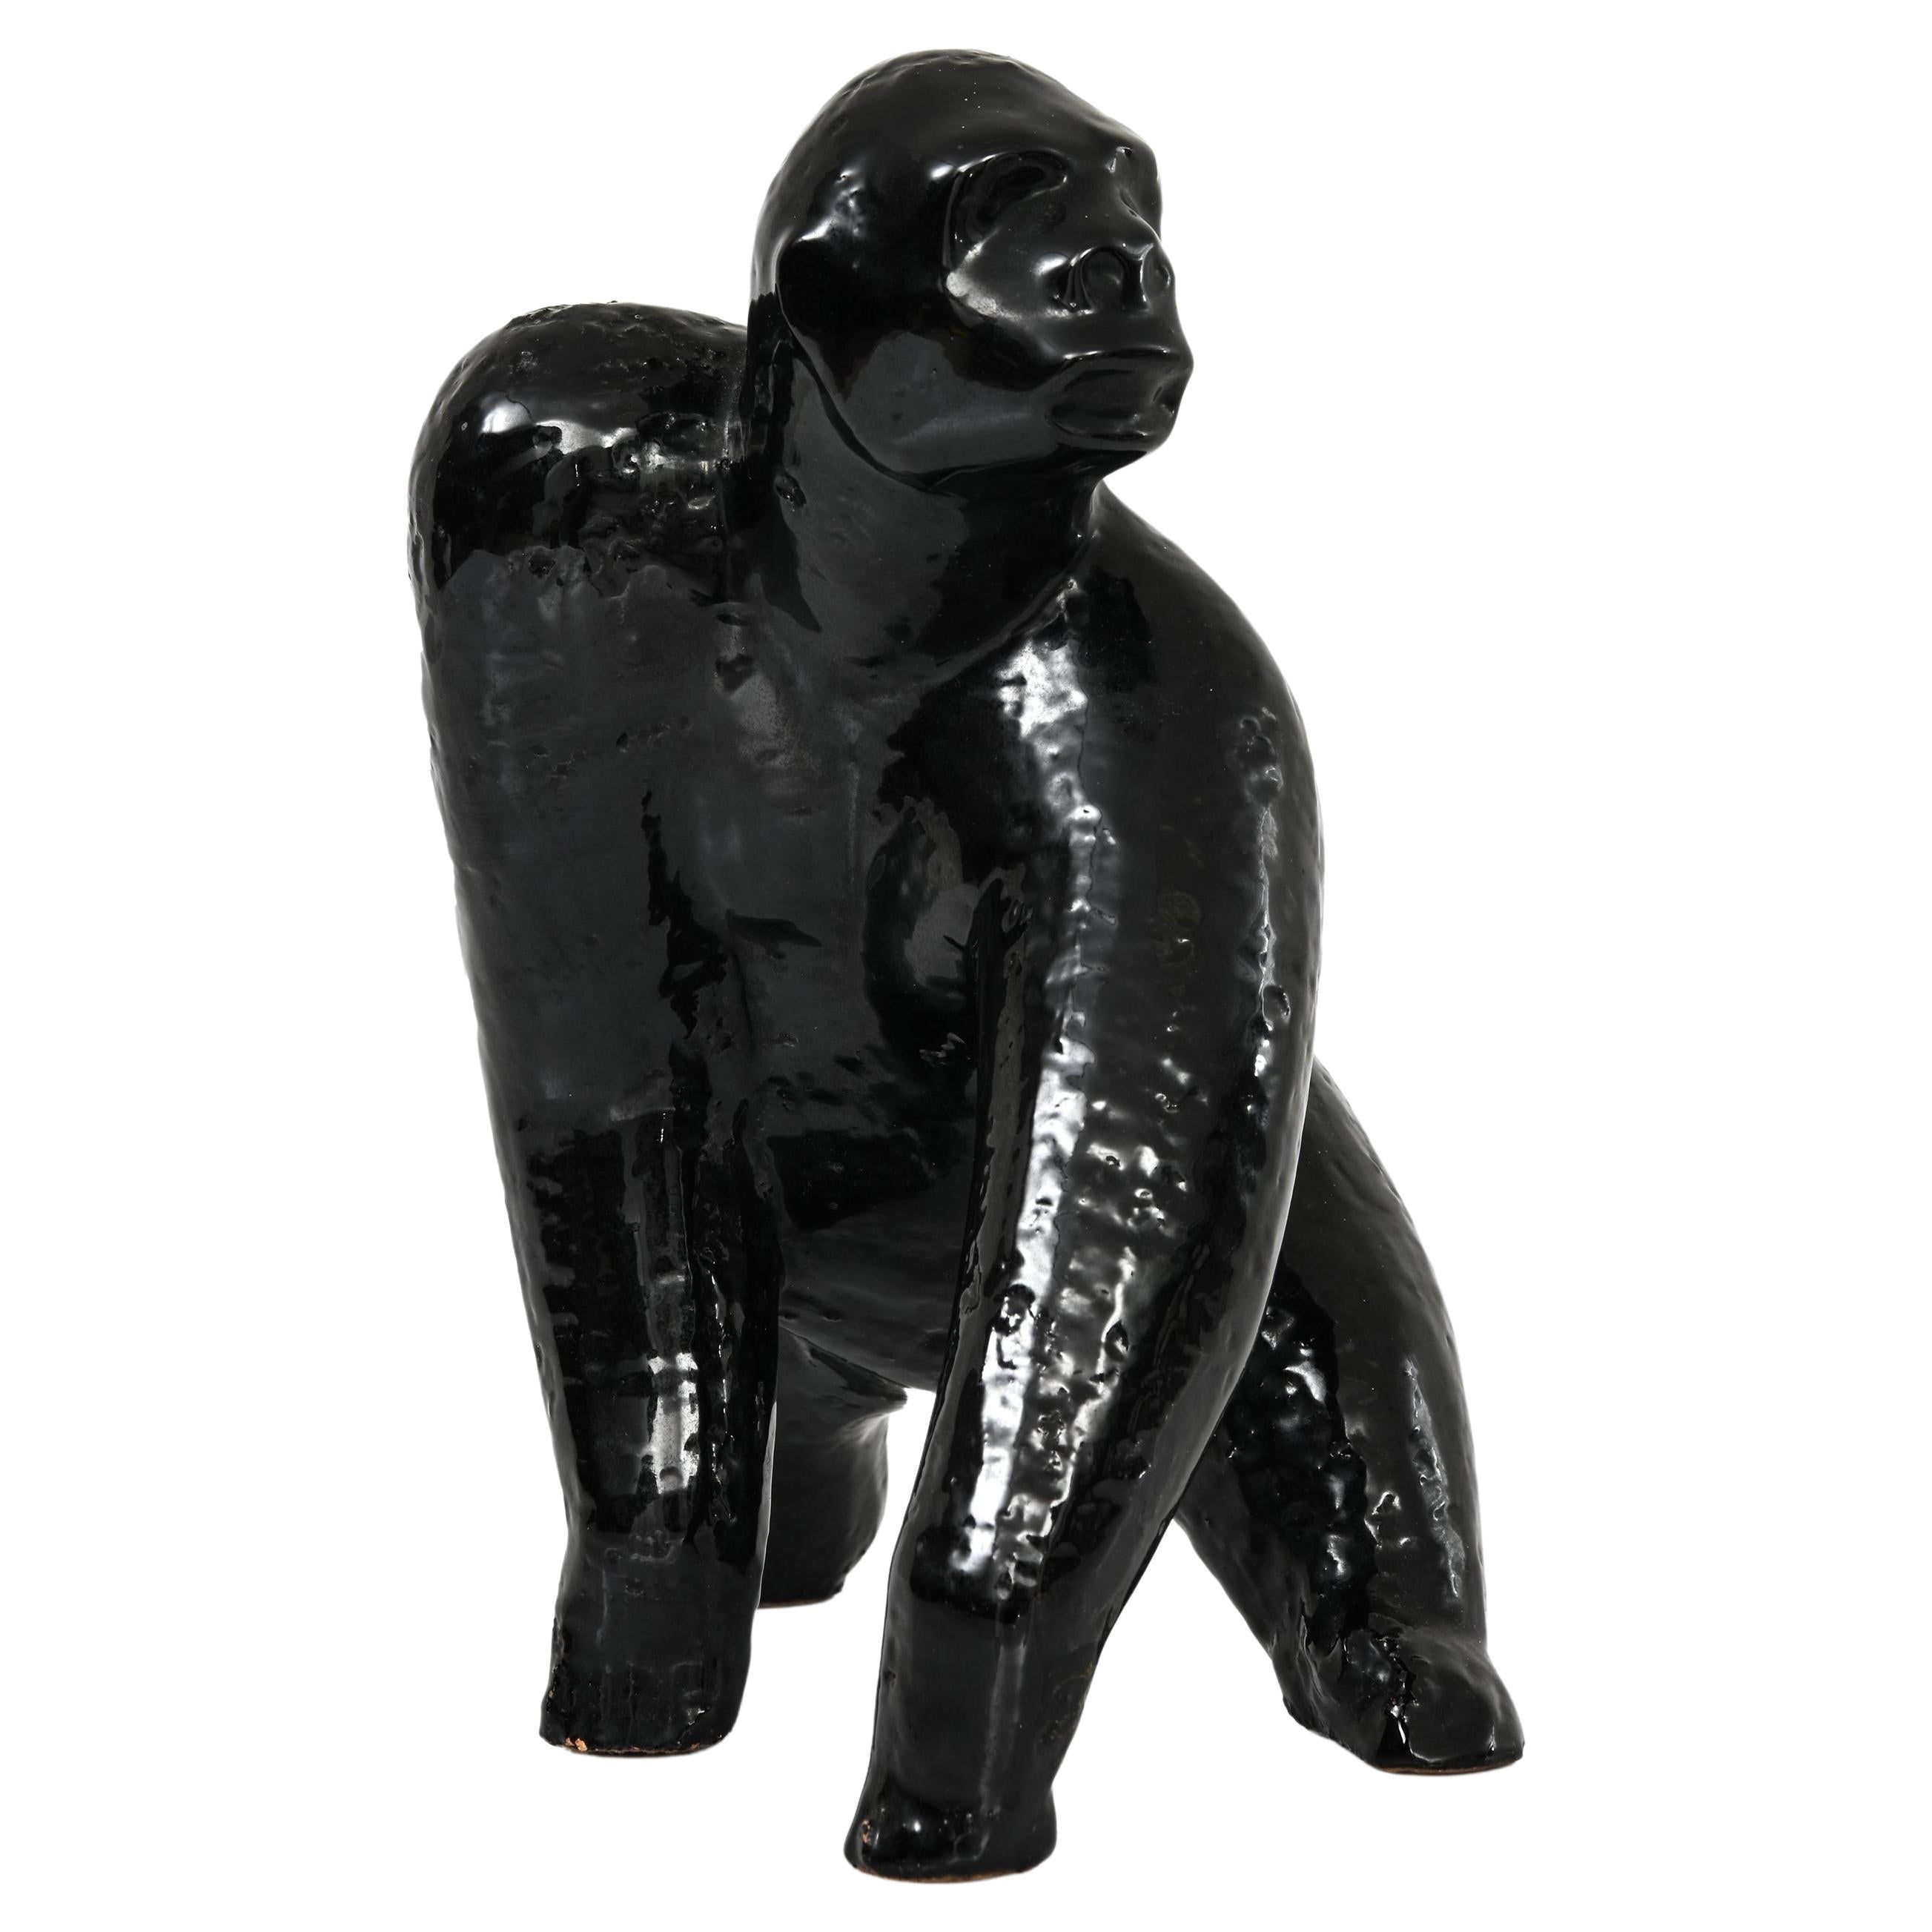 Sculpture de Gorilla en céramique émaillée noire, années 1960